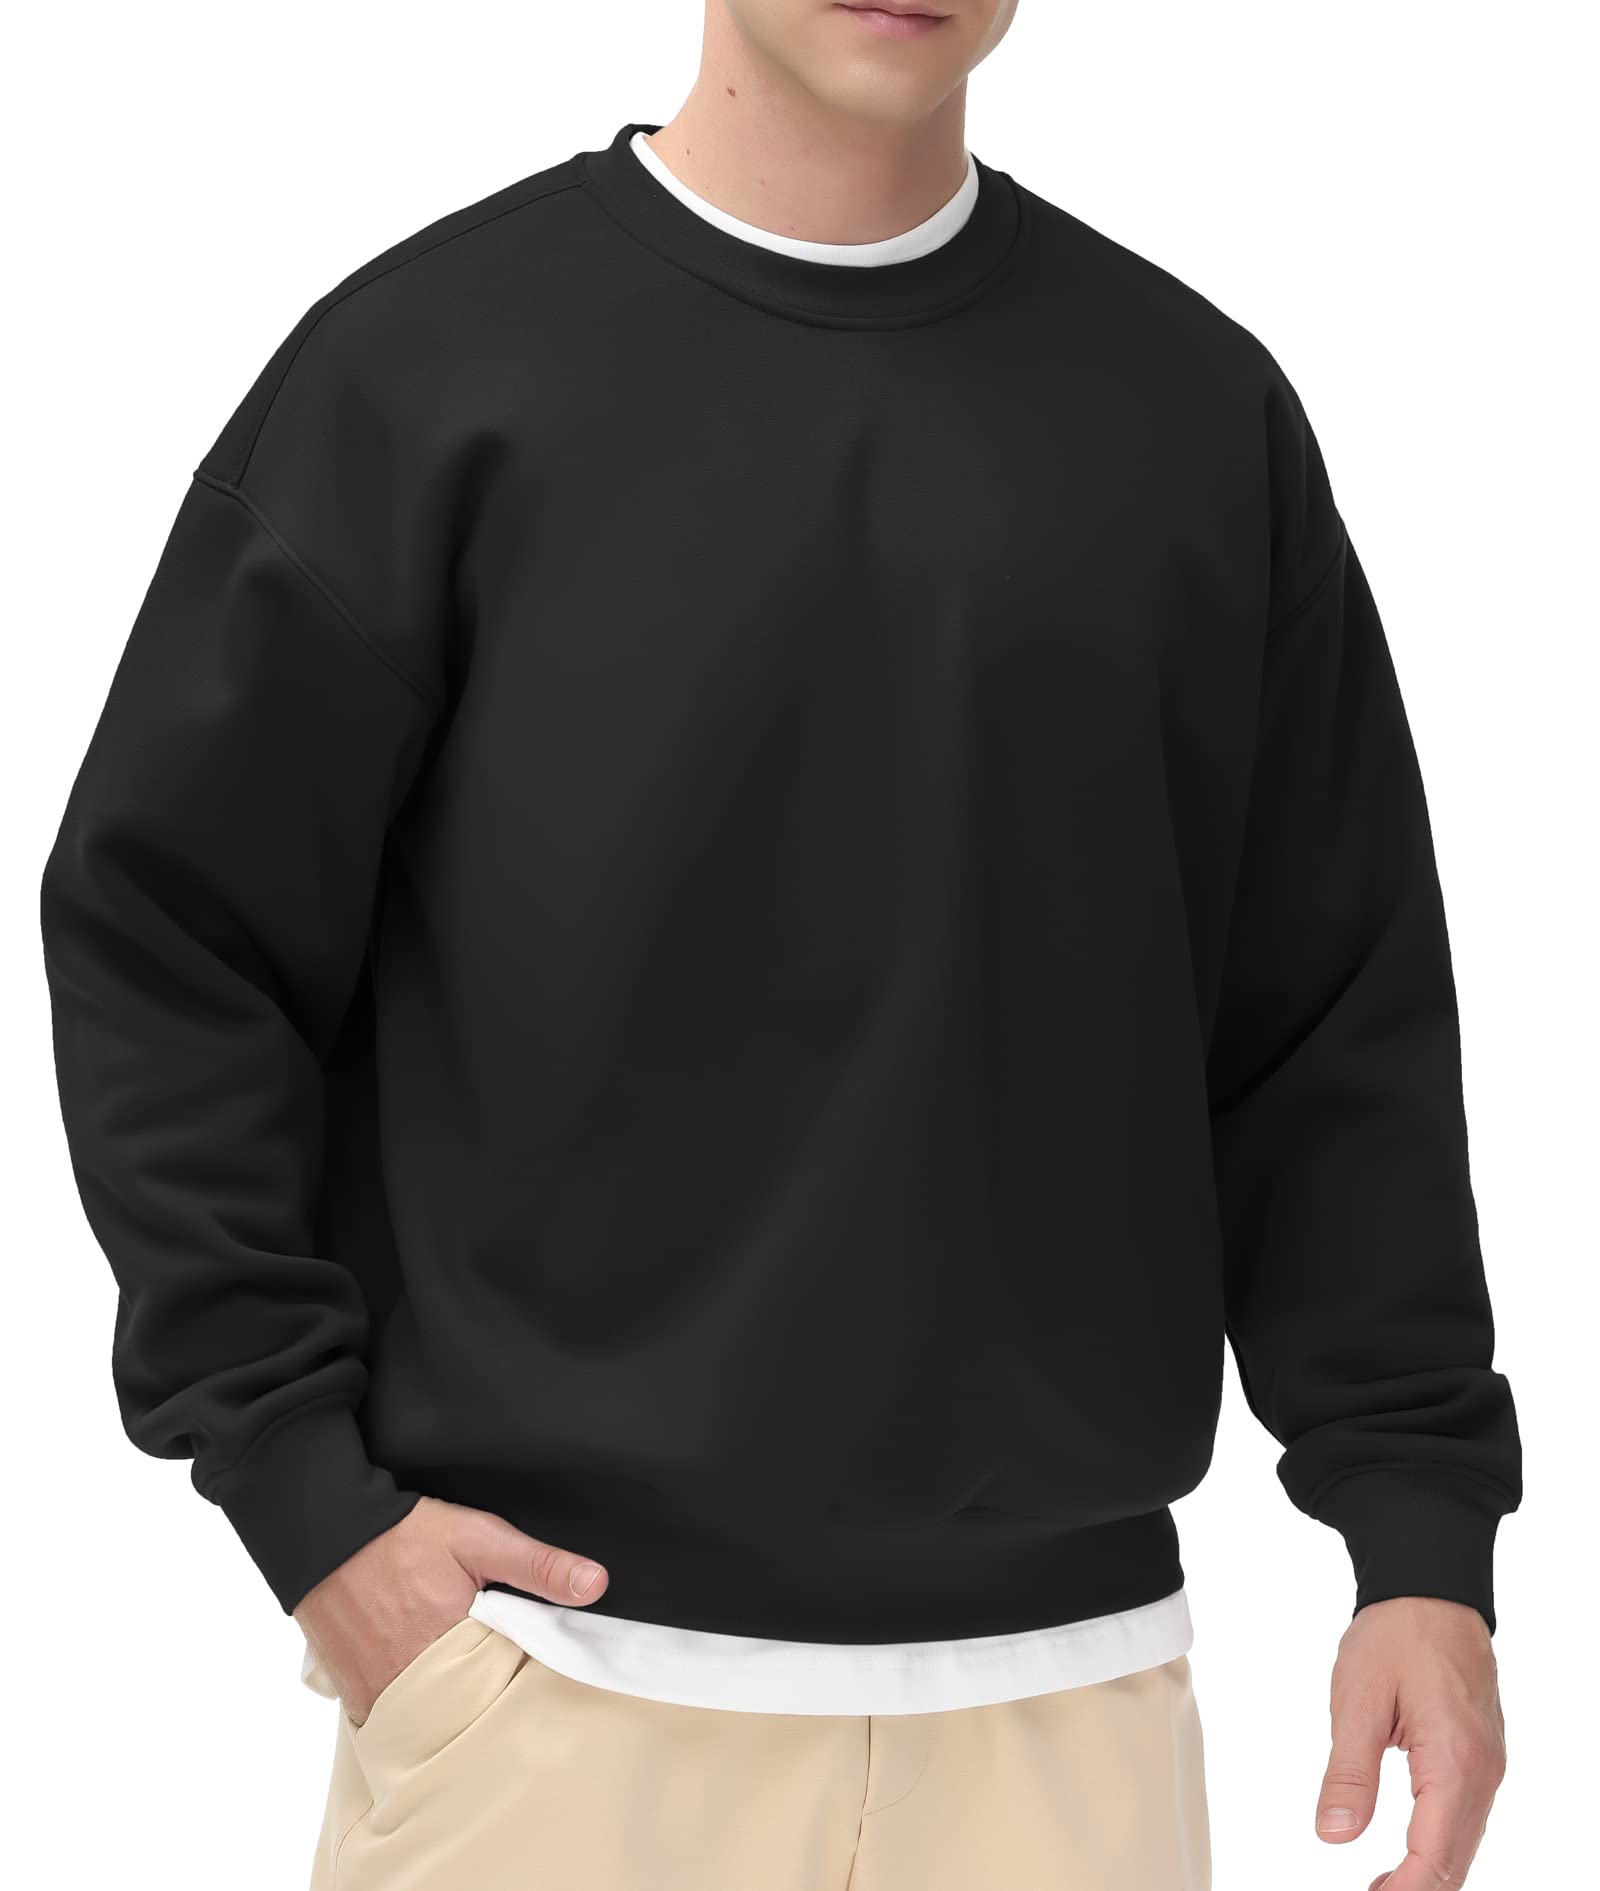 Loose Fit Sweatshirt - Black - Men